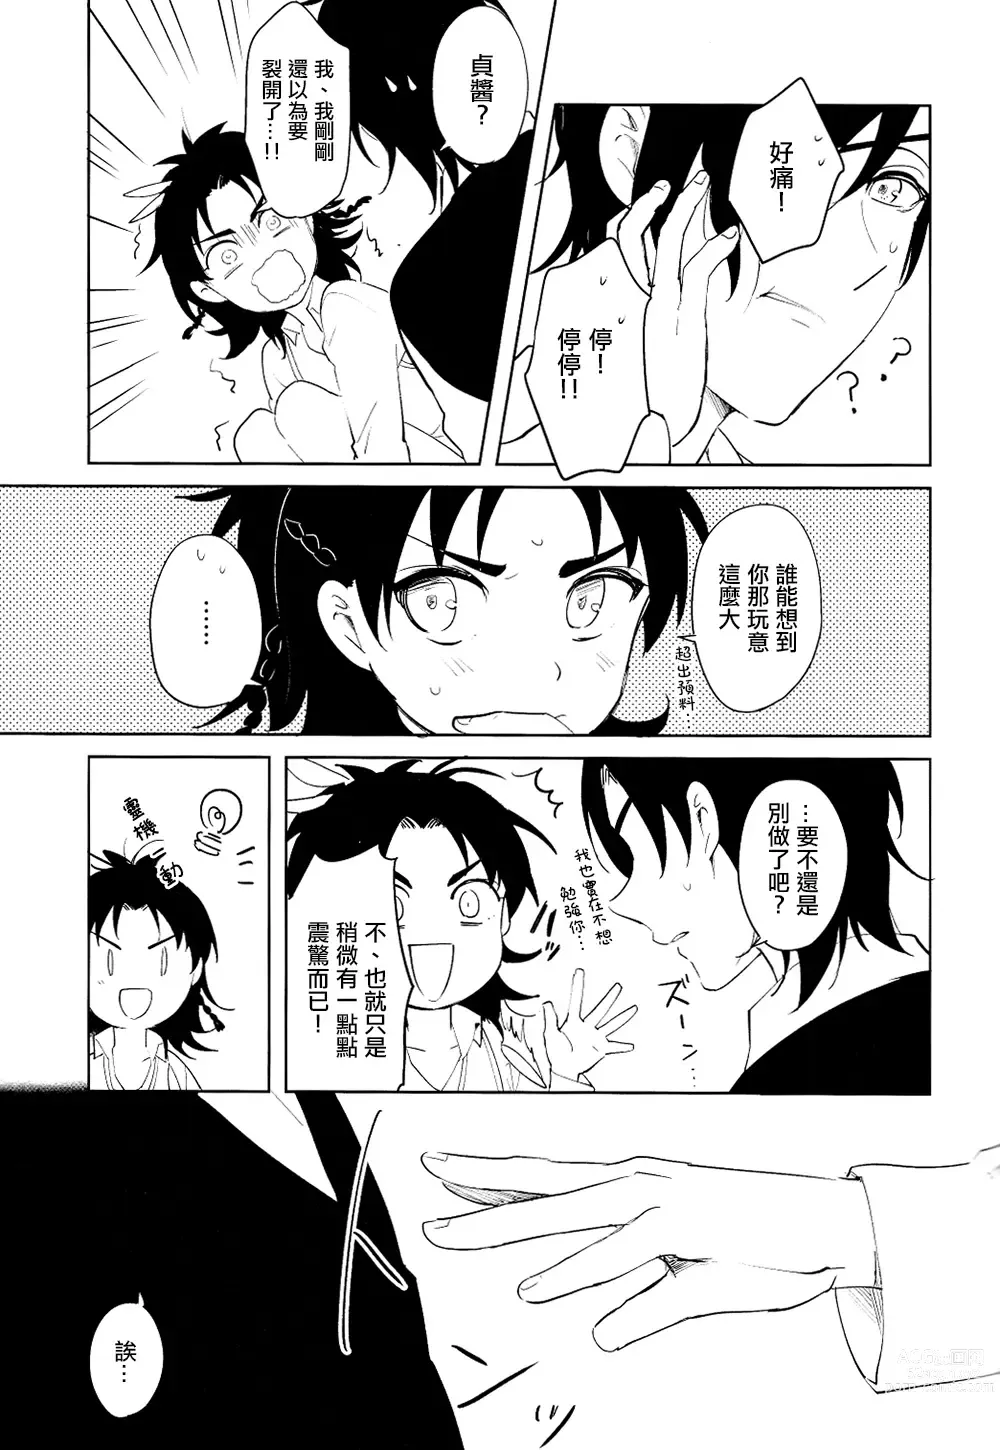 Page 18 of doujinshi 从一个人变成两个人